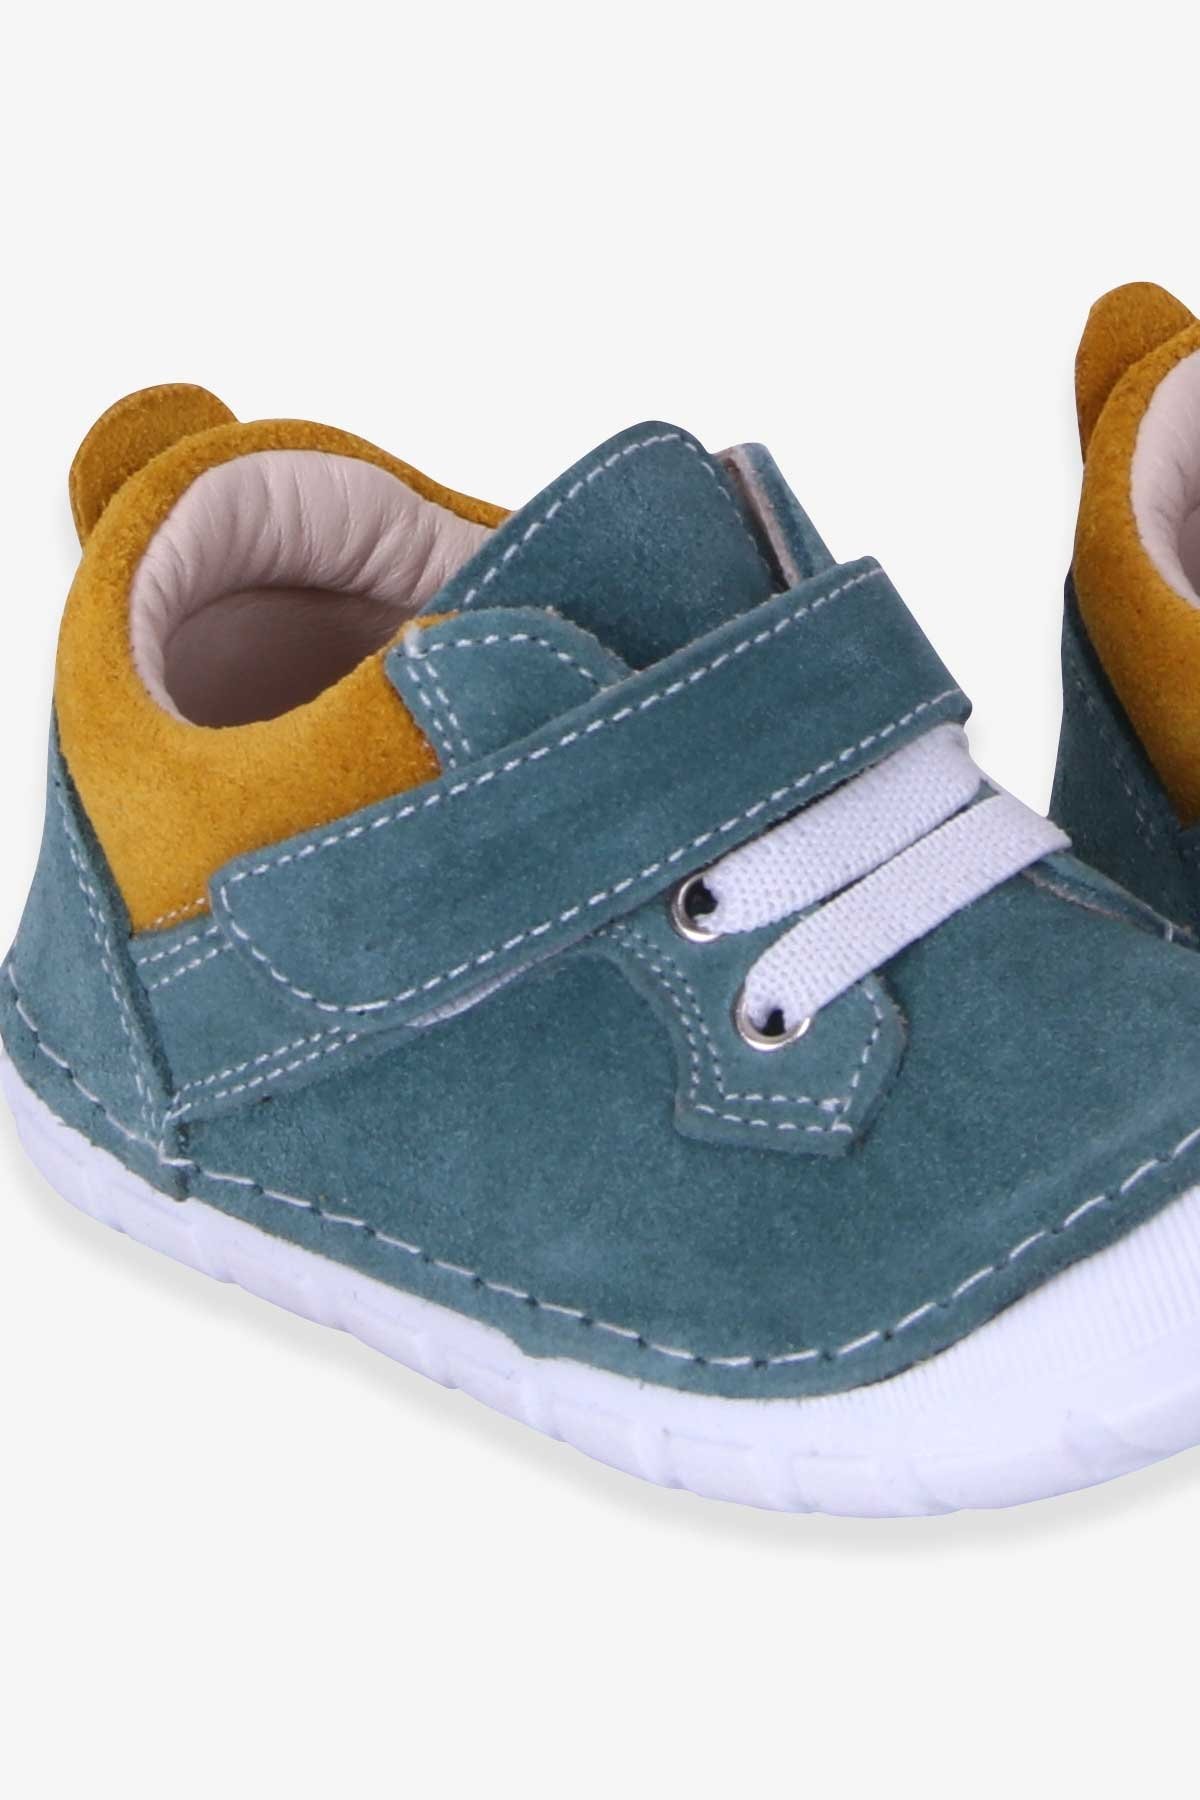 Erkek Çocuk Cırtlı Süet Ayakkabı Mint Yeşili 19-20 Numara - Tatlı Bebek  Ayakkabıları | Breeze